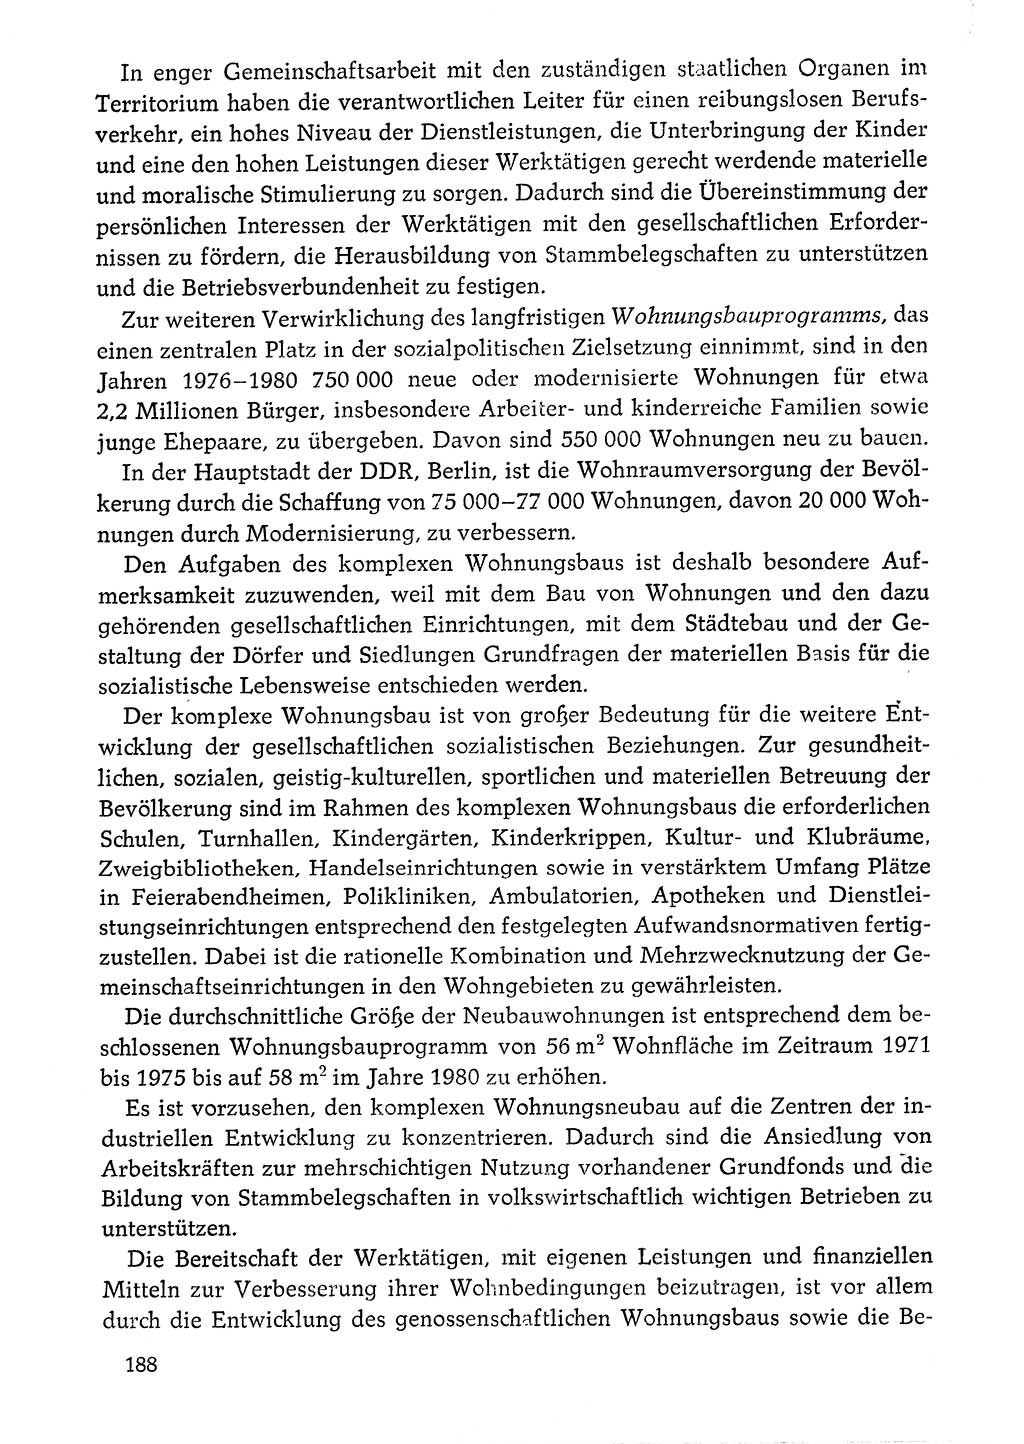 Dokumente der Sozialistischen Einheitspartei Deutschlands (SED) [Deutsche Demokratische Republik (DDR)] 1976-1977, Seite 188 (Dok. SED DDR 1976-1977, S. 188)